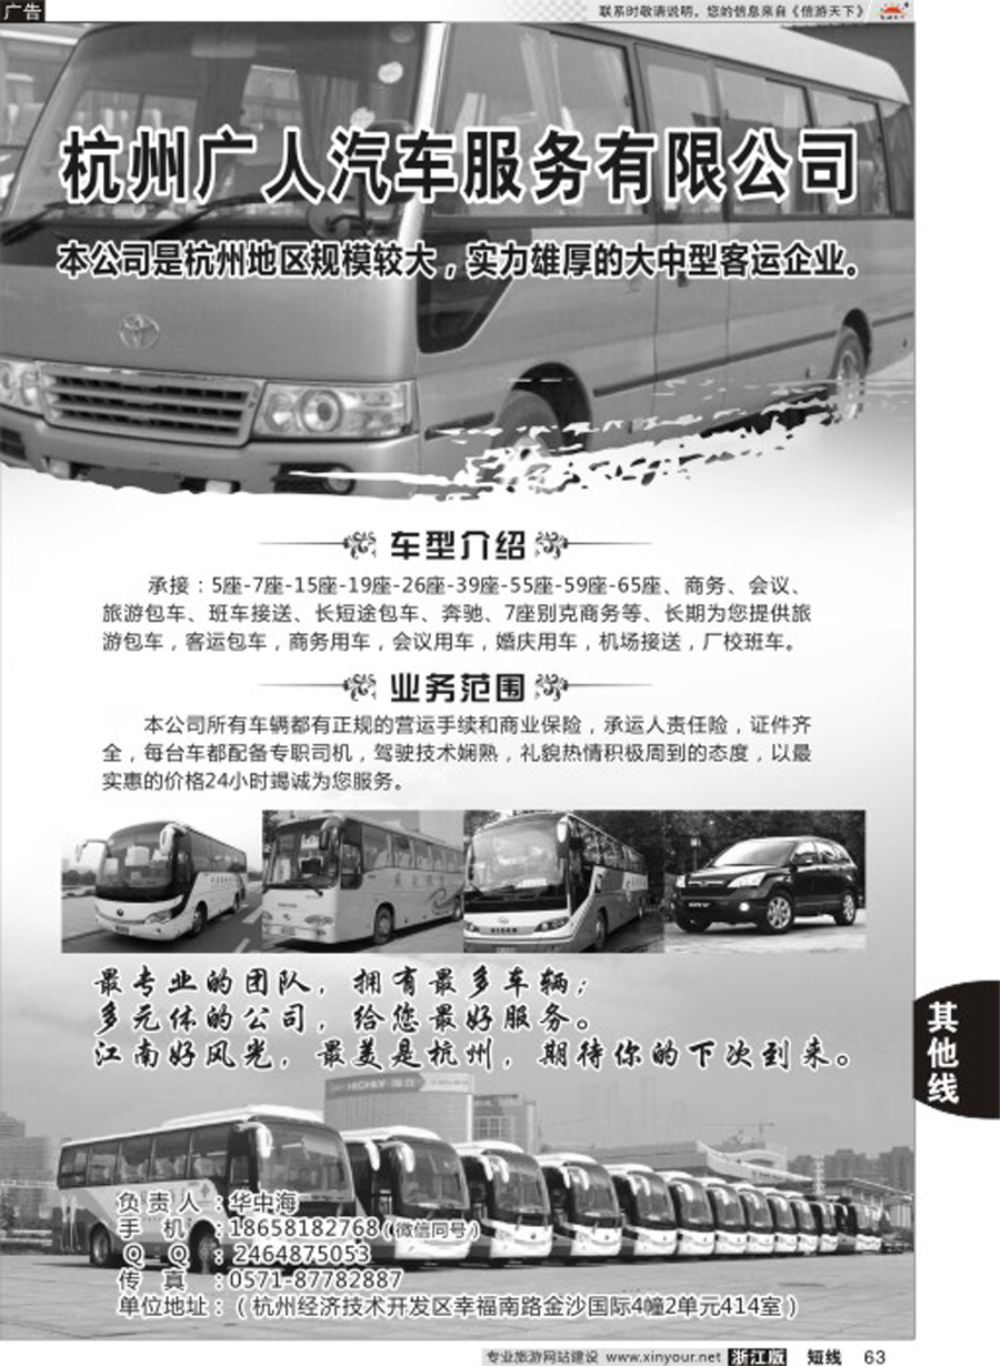 63杭州广人汽车服务有限公司